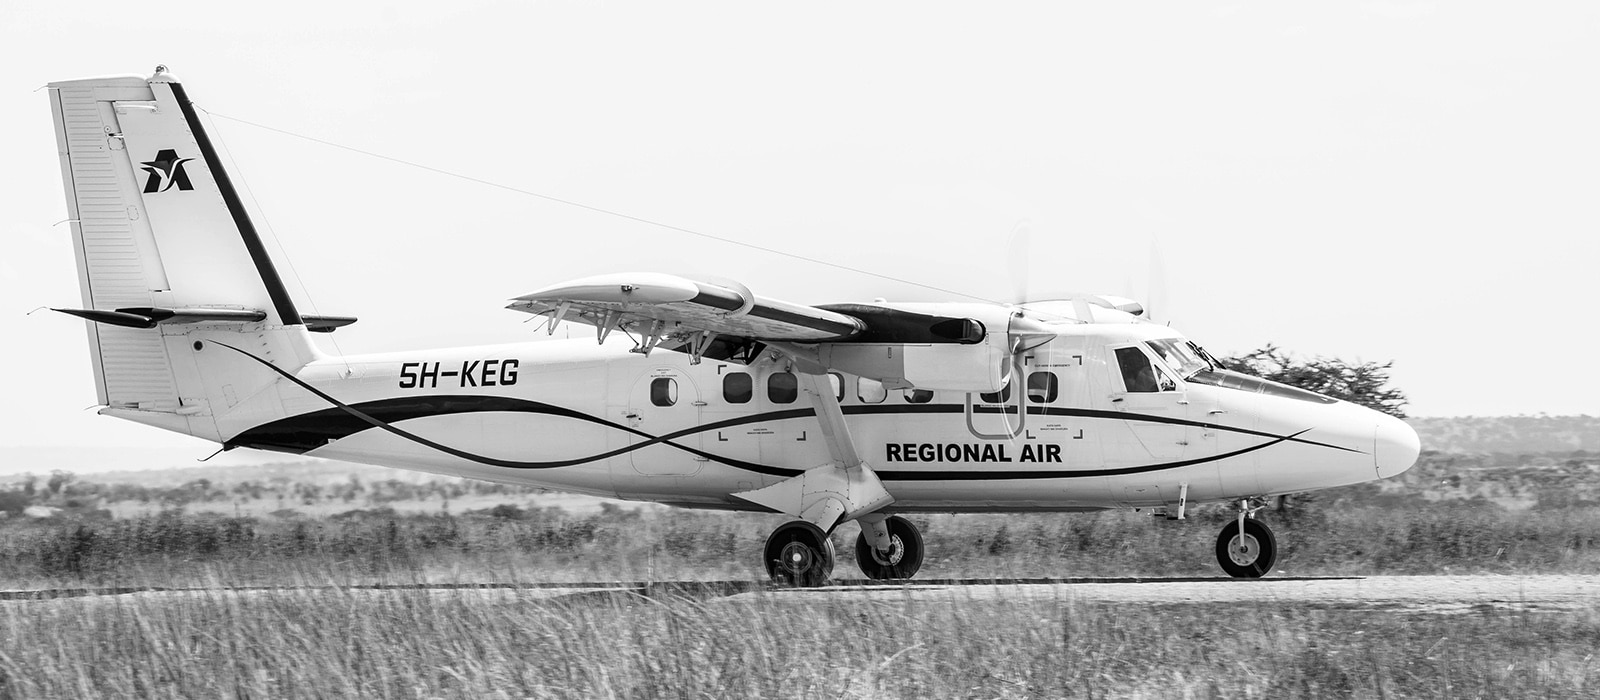 Regional Air bush plane on a runaway